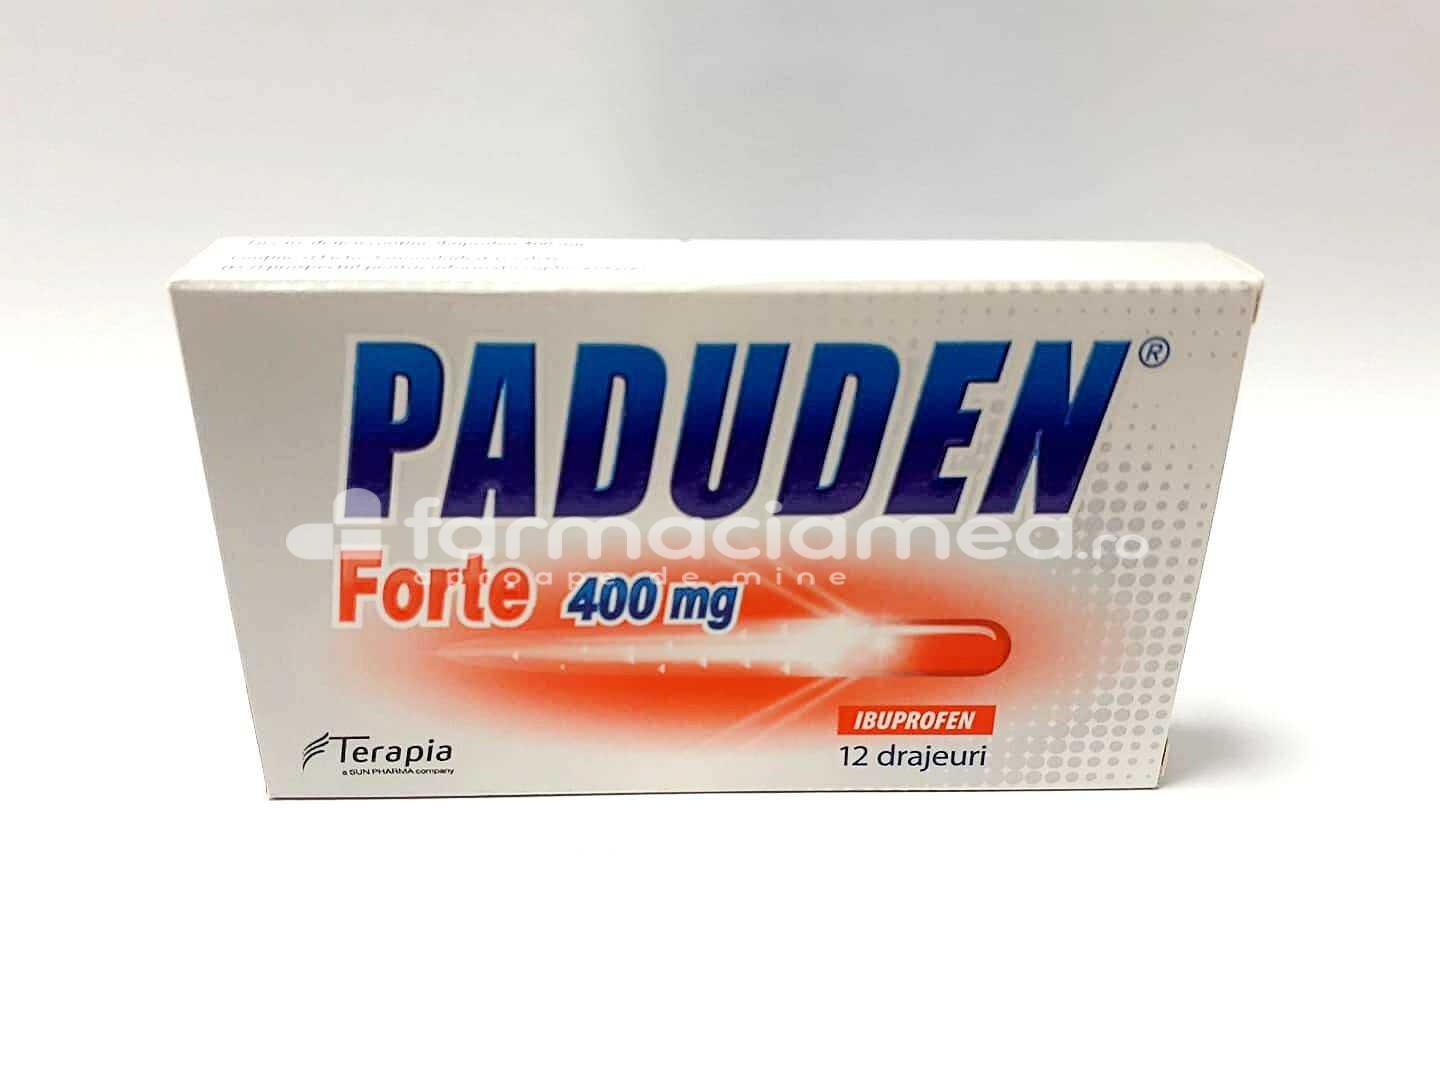 Durere OTC - Paduden Forte 400mg, indicat in ameliorarea durerilor de intensitate usoara pana la moderata, 12 drajeuri, Terapia, farmaciamea.ro